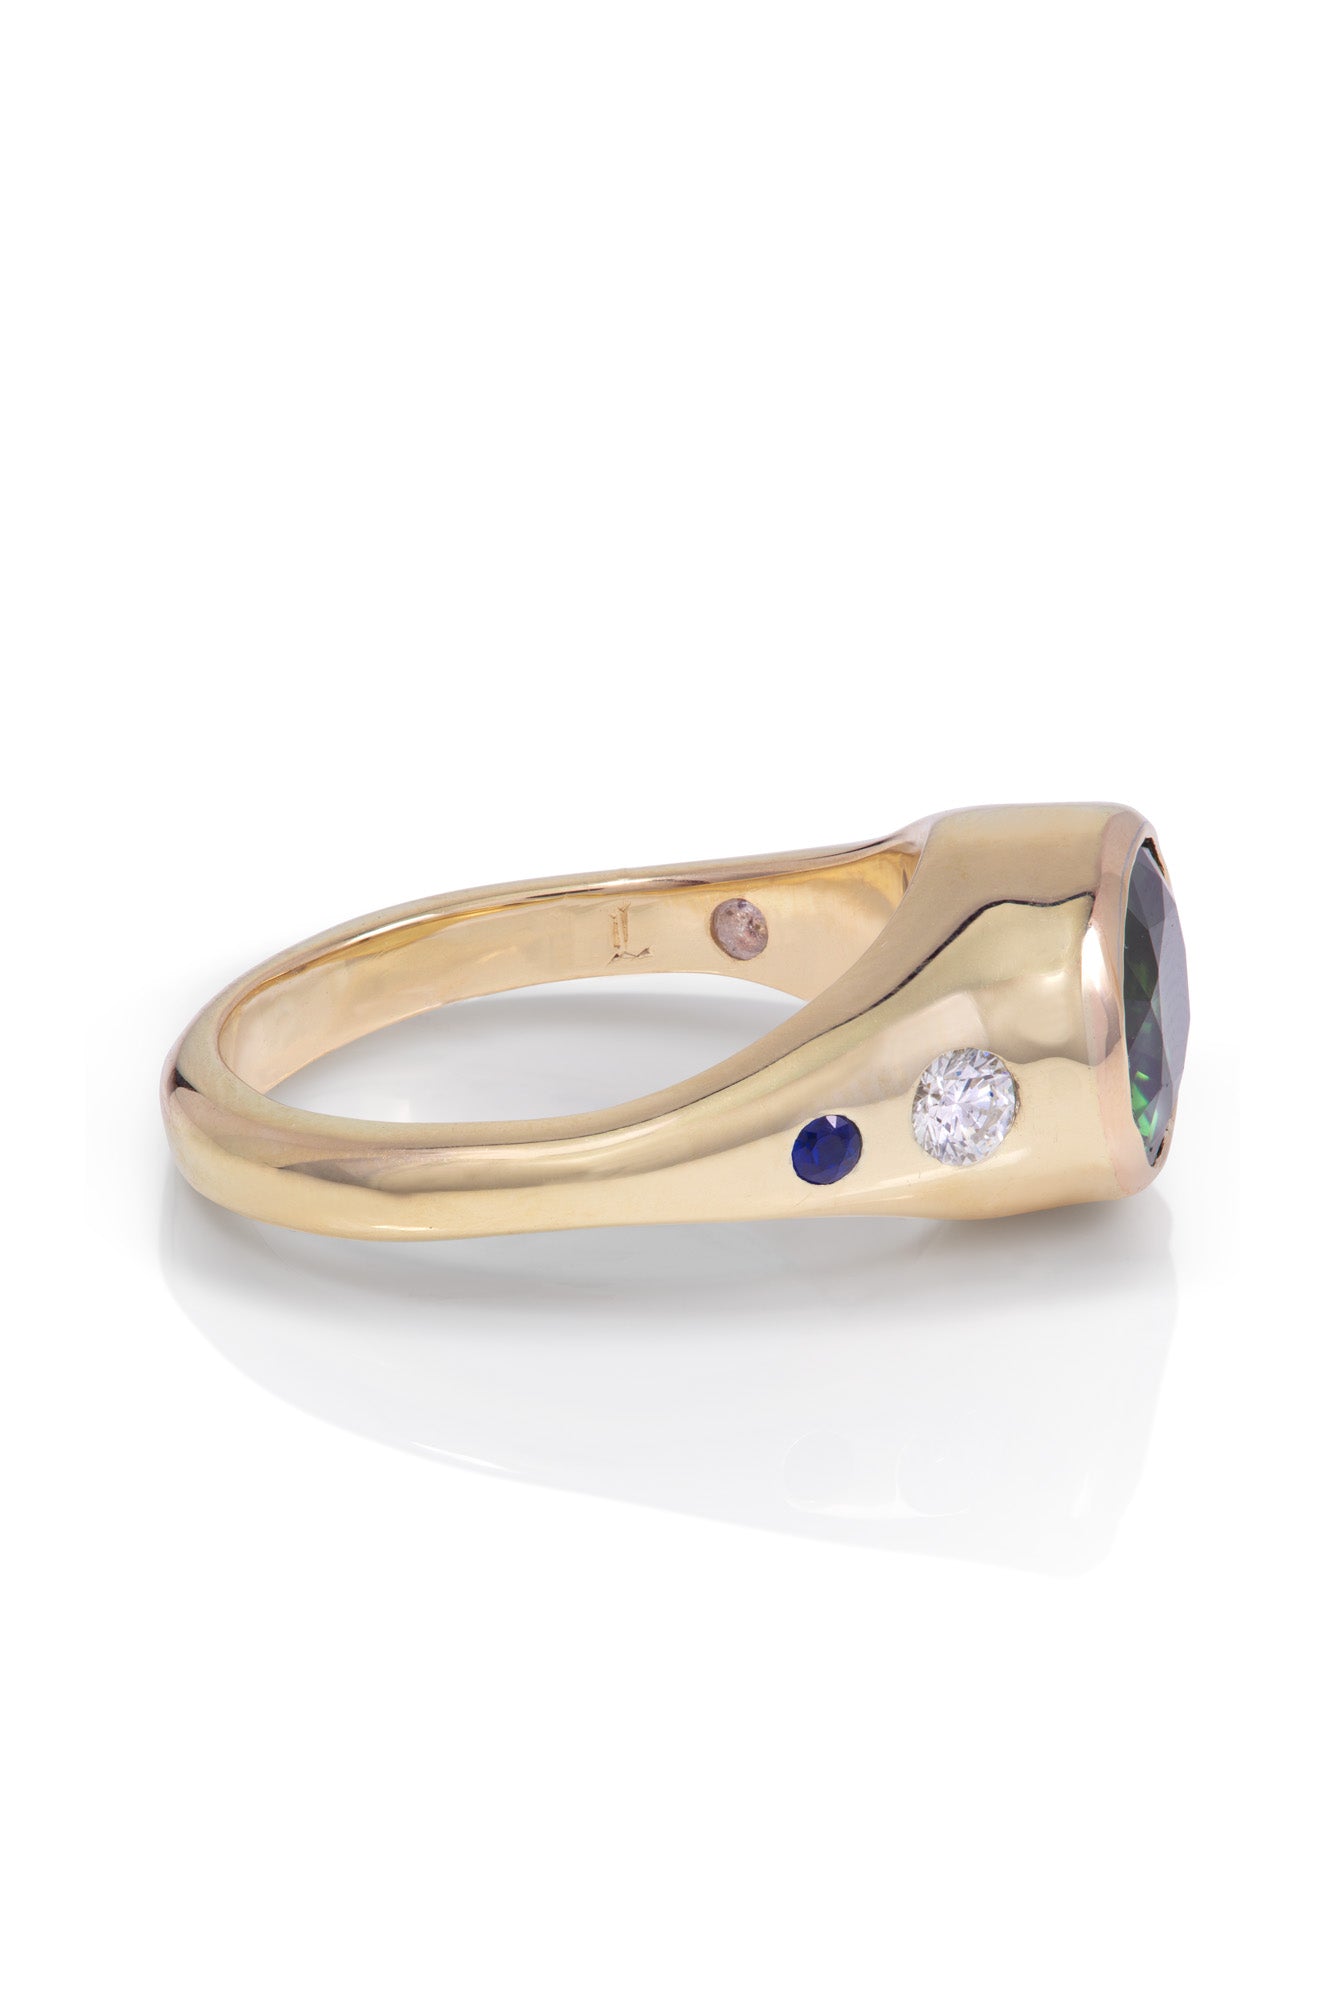 Bespoke Sapphire & Diamond Engagement Ring